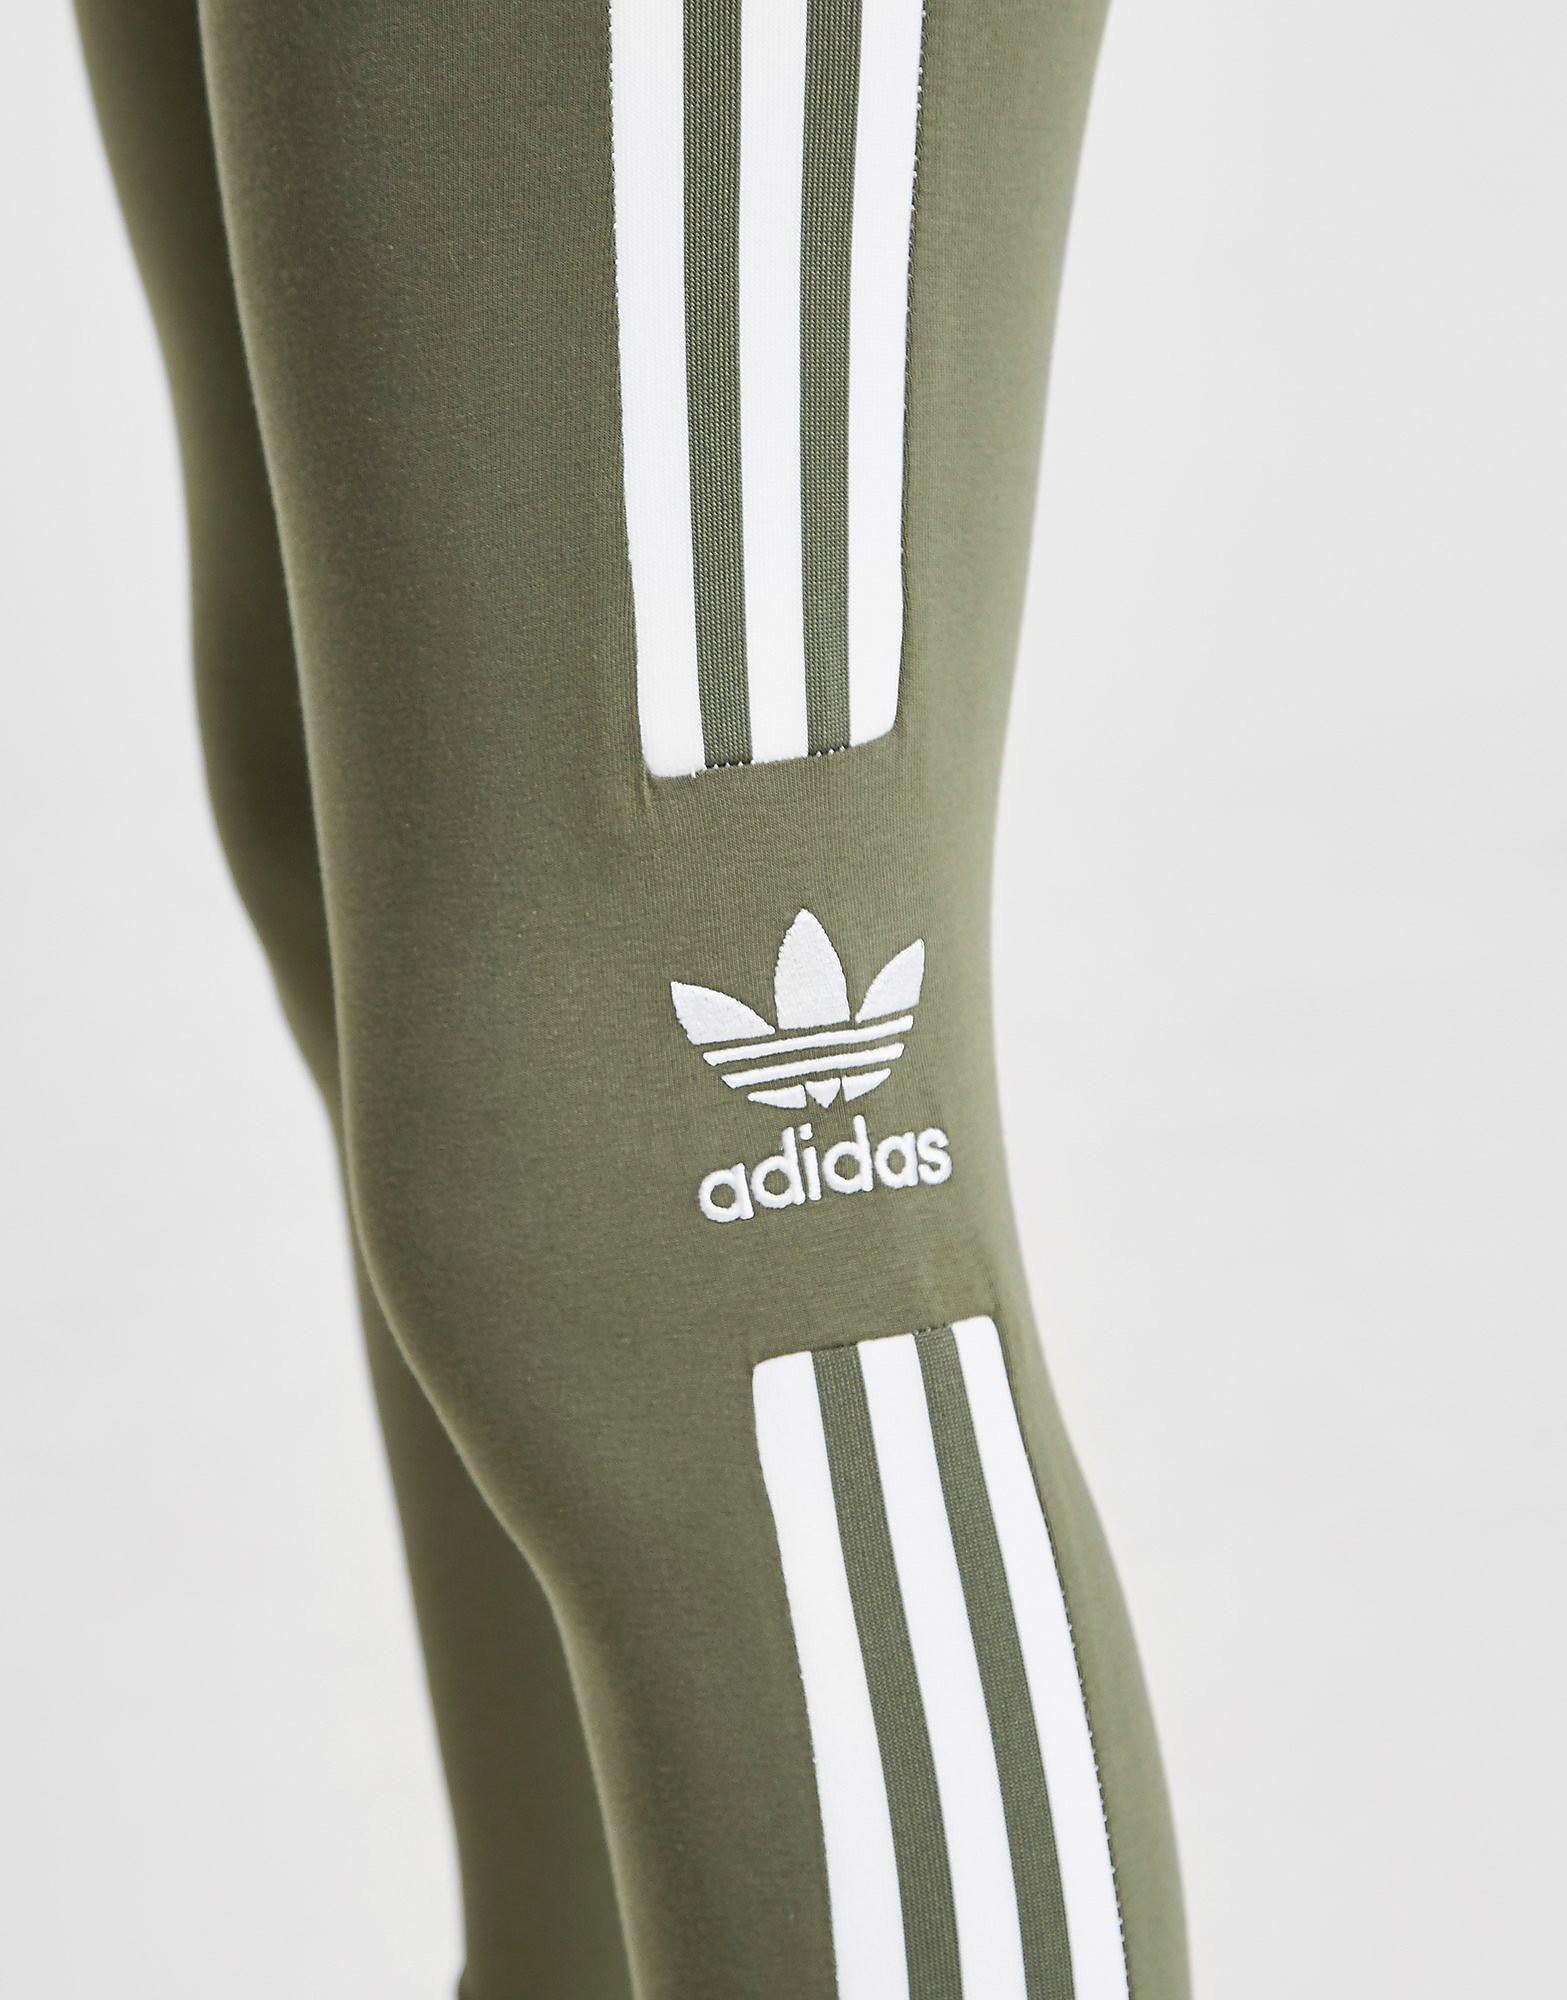 الضروريات بحرص ضع علامة طويل التضخم خلاق legging adidas kaki -  publishwithbridges.com